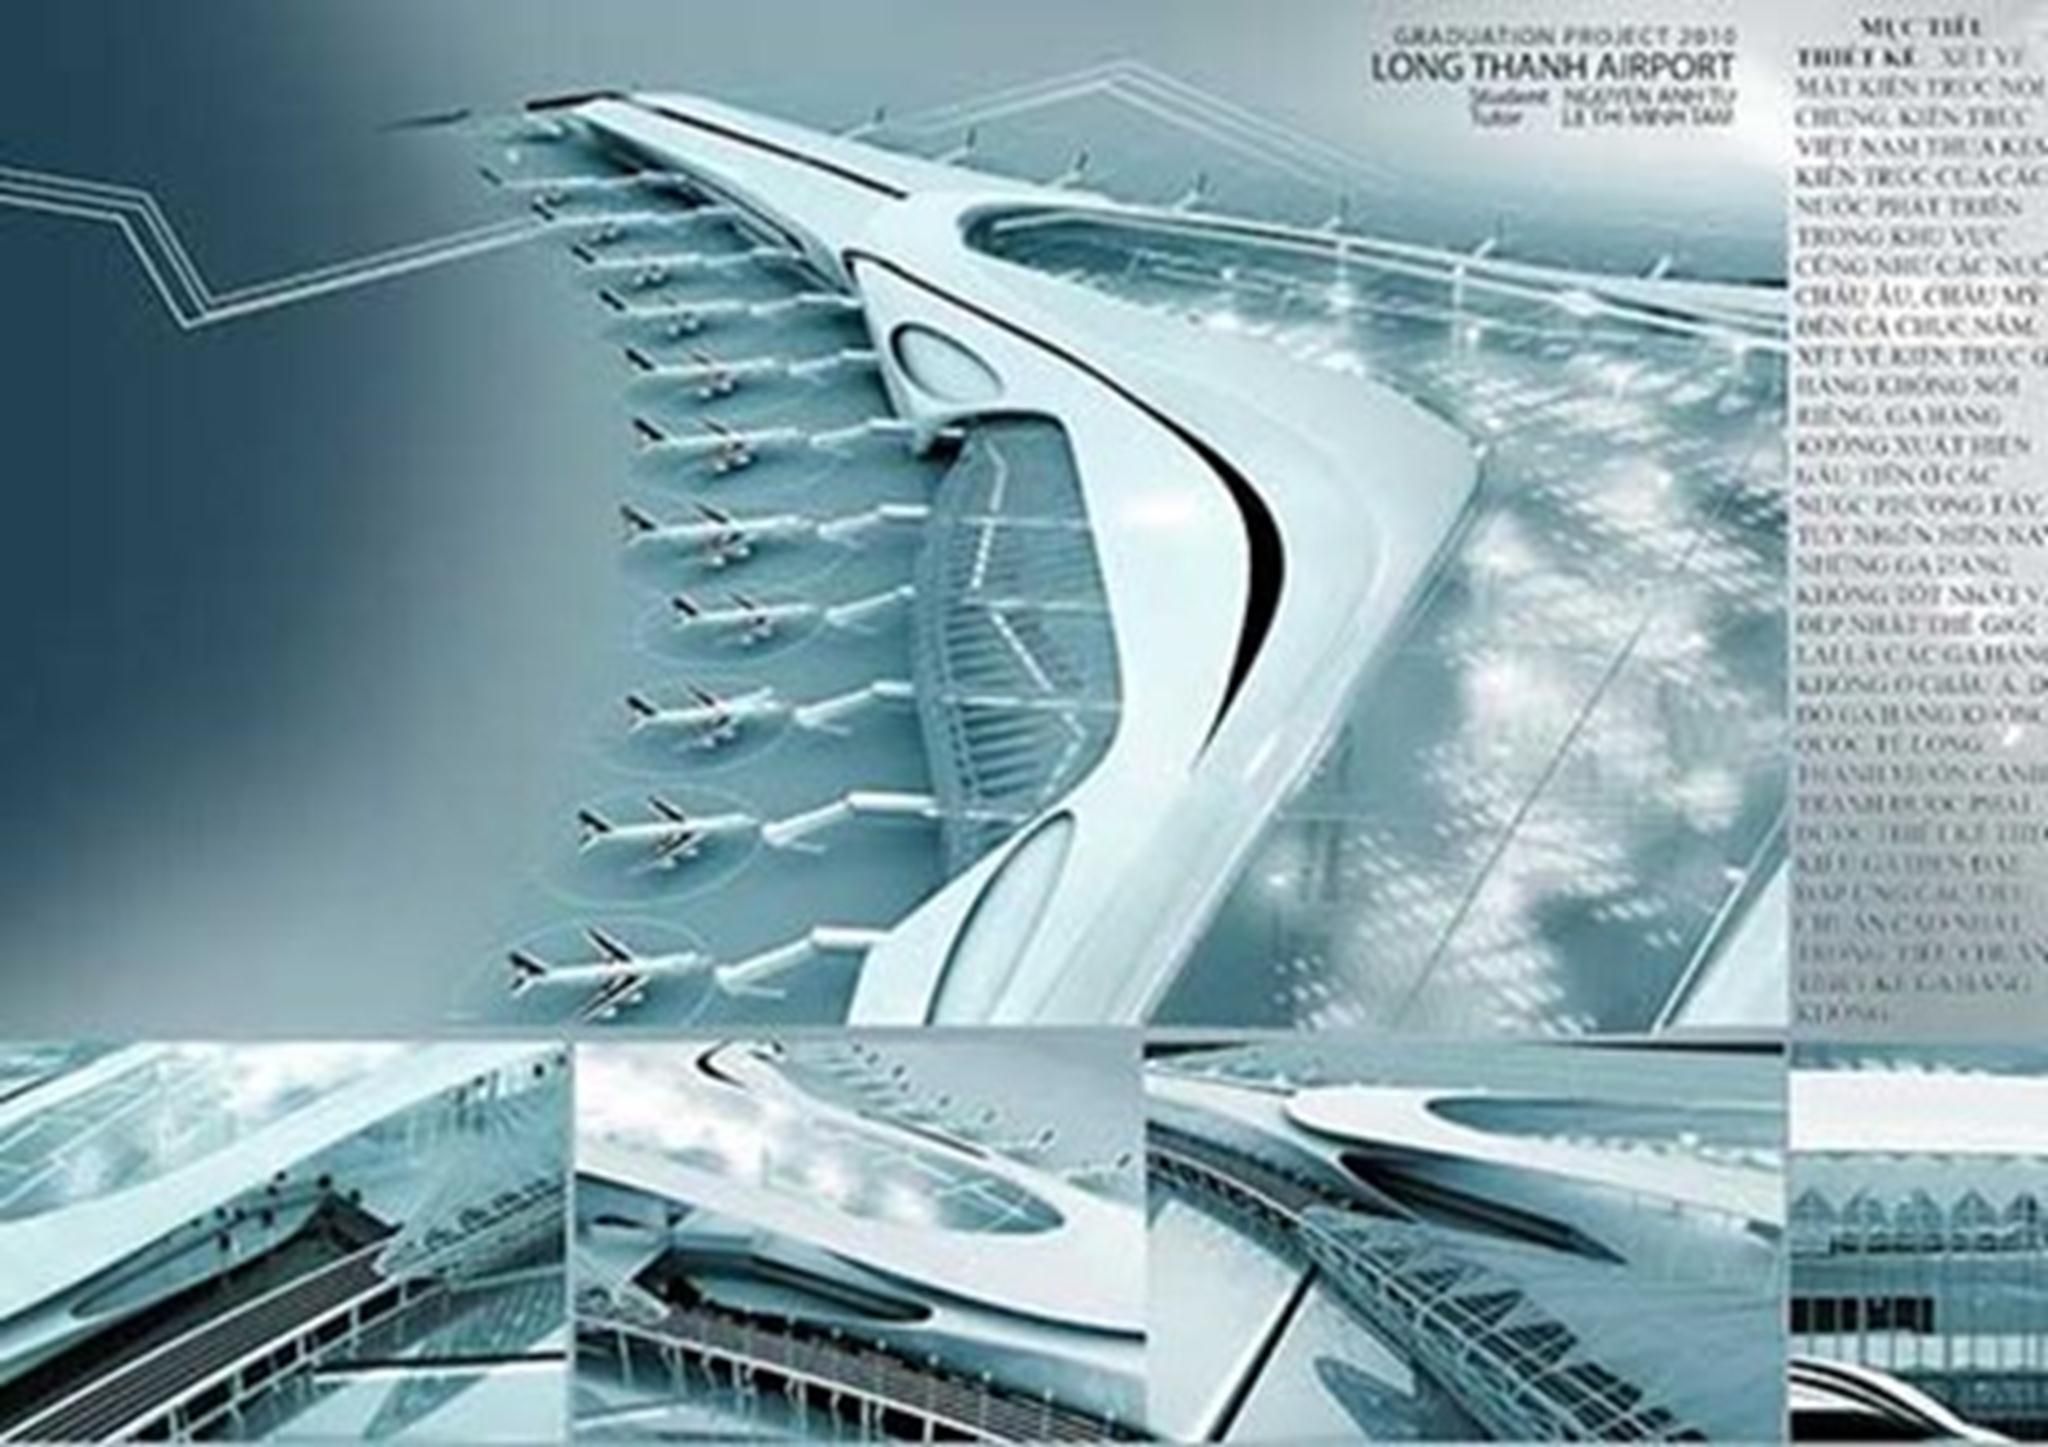 Đồ án thiết kế sân bay Long Thành được đánh giá xuất sắc của sinh viên kiến trúc.